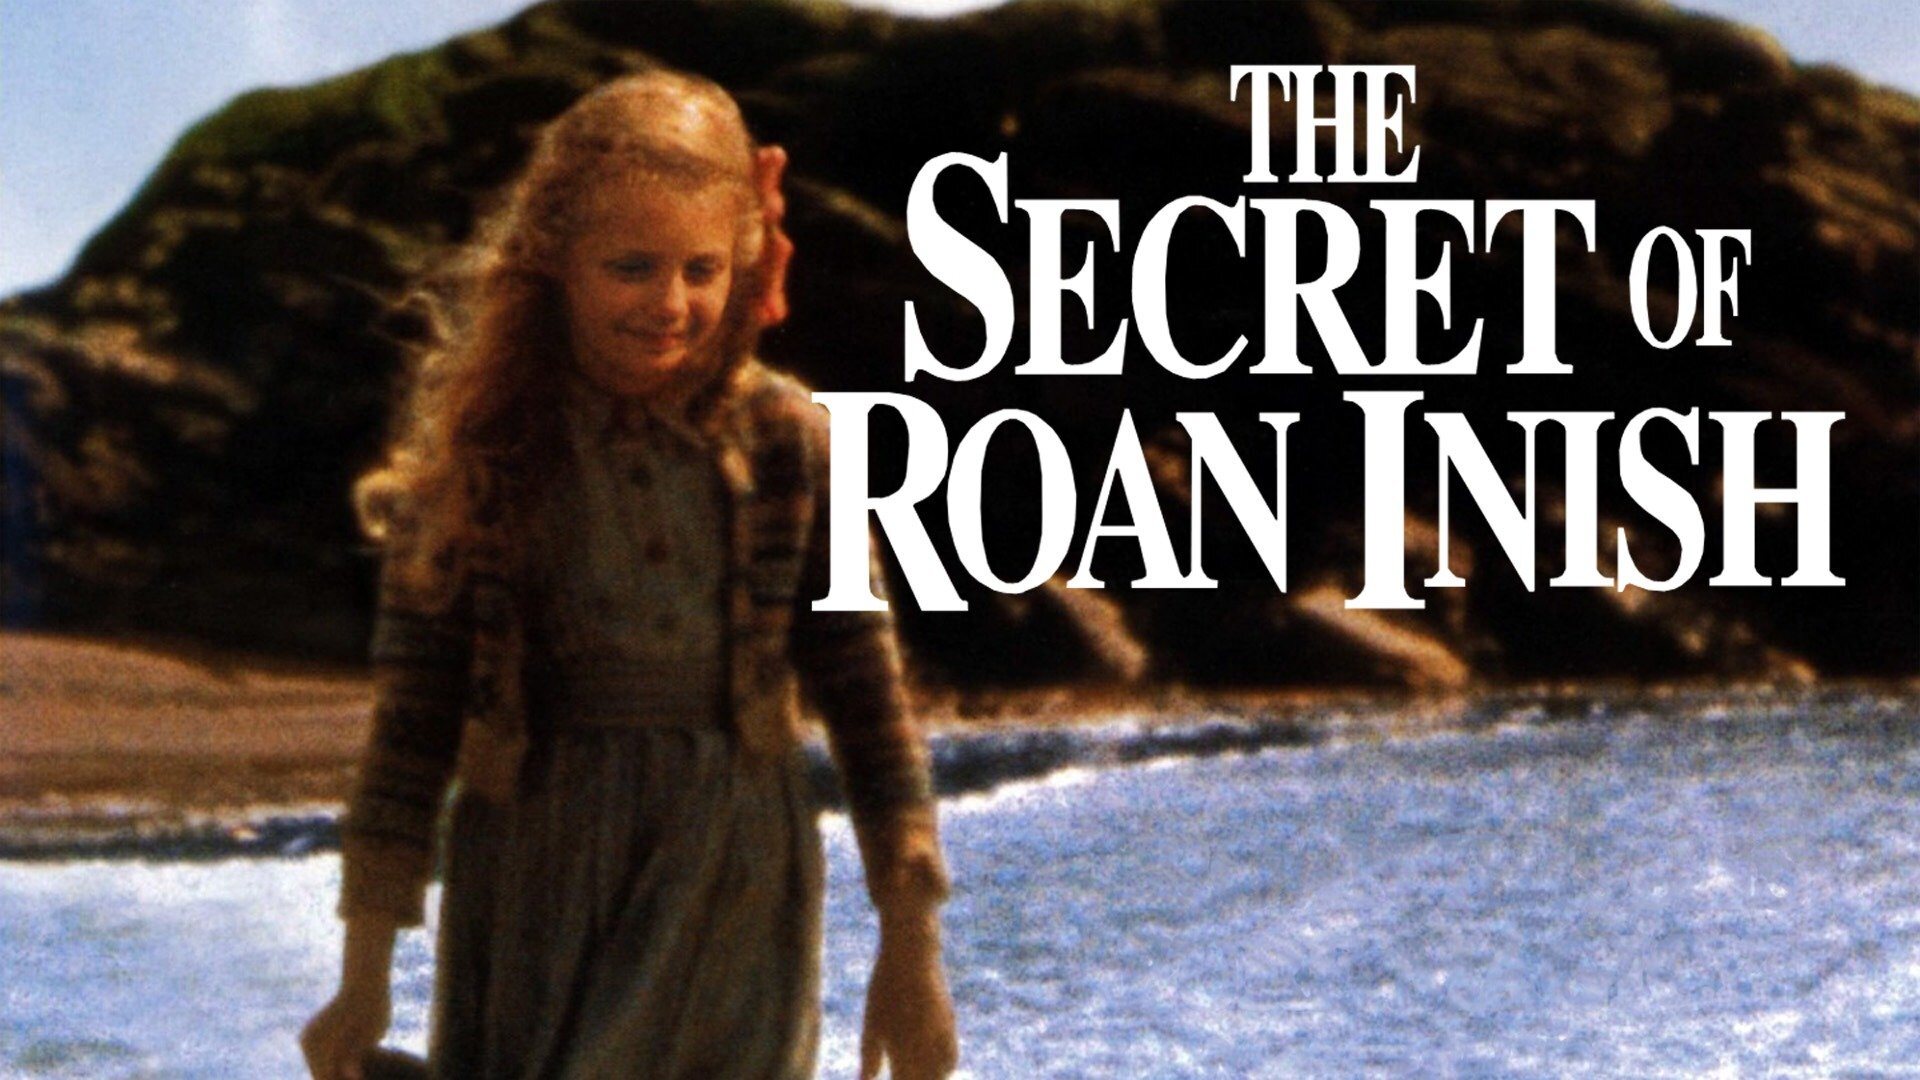 "Тайна острова Роан-Иниш" / "the Secret of Roan Inish", 1994. Селки из тайна острова Роан-Иниш. Тайна острова роан иниш